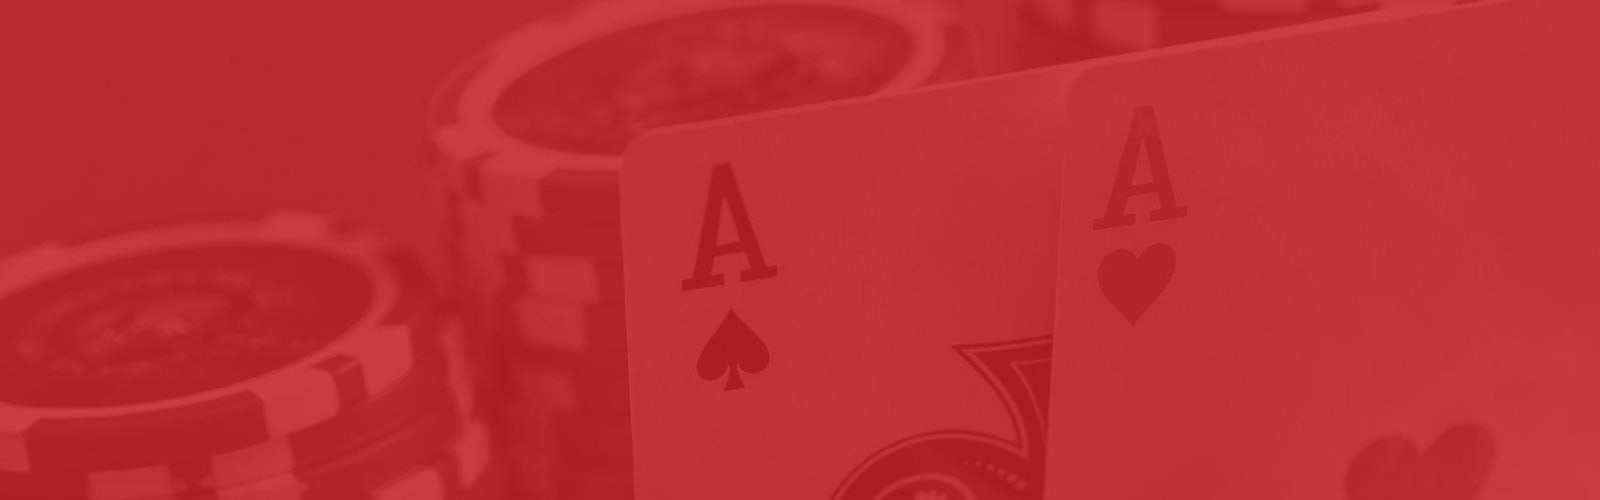 Casino utan konto image headlineblock casinokort for sajter dar du inte behover nagot konto